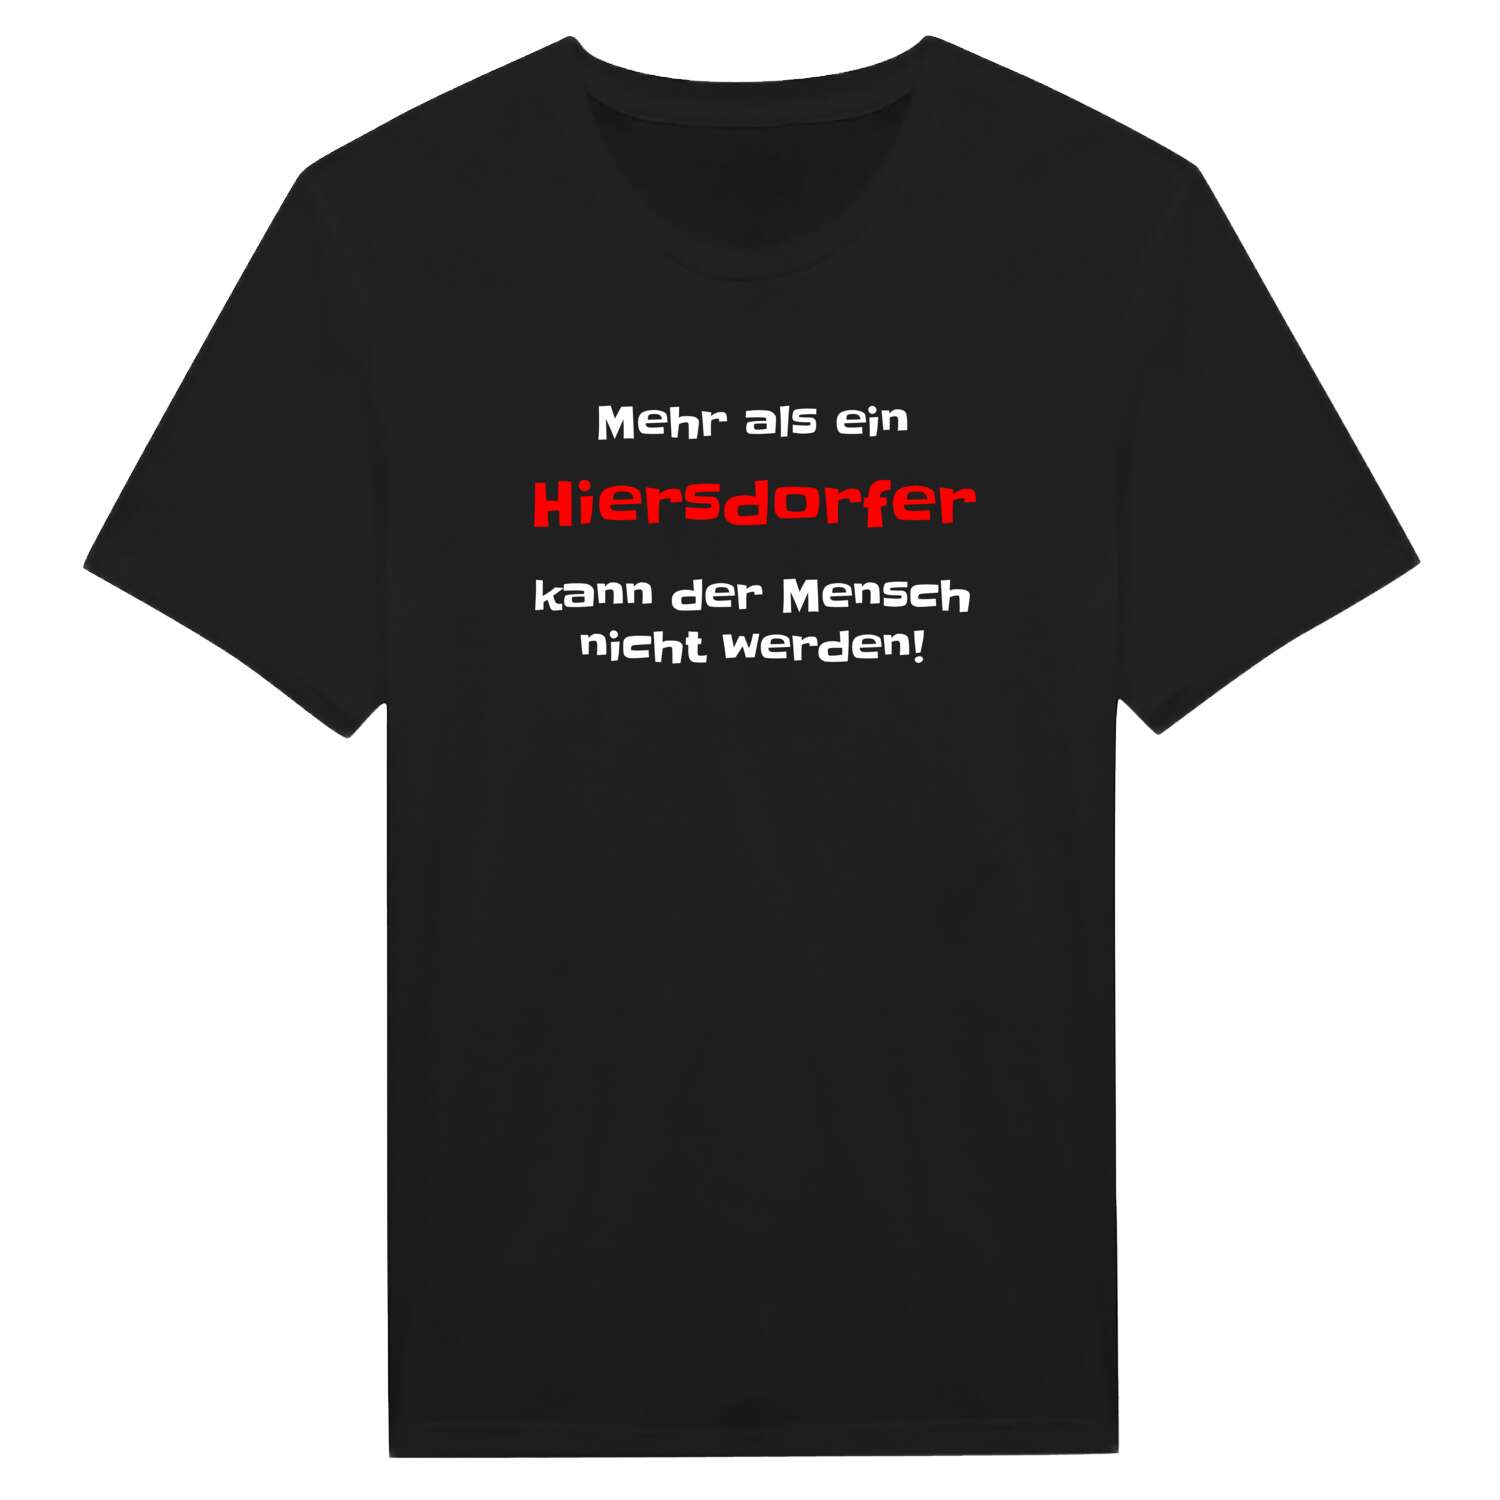 Hiersdorf T-Shirt »Mehr als ein«